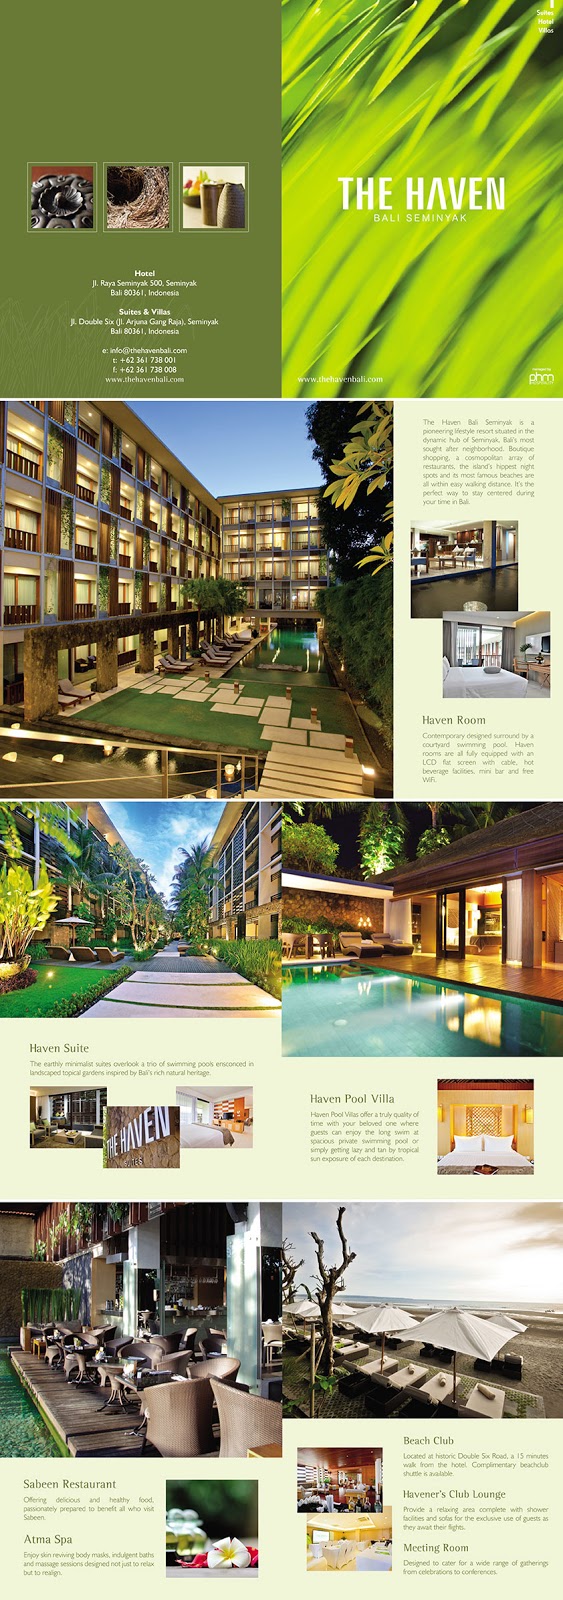 Referensi Desain Brosur Promosi Hotel  Berbagi Informasi 